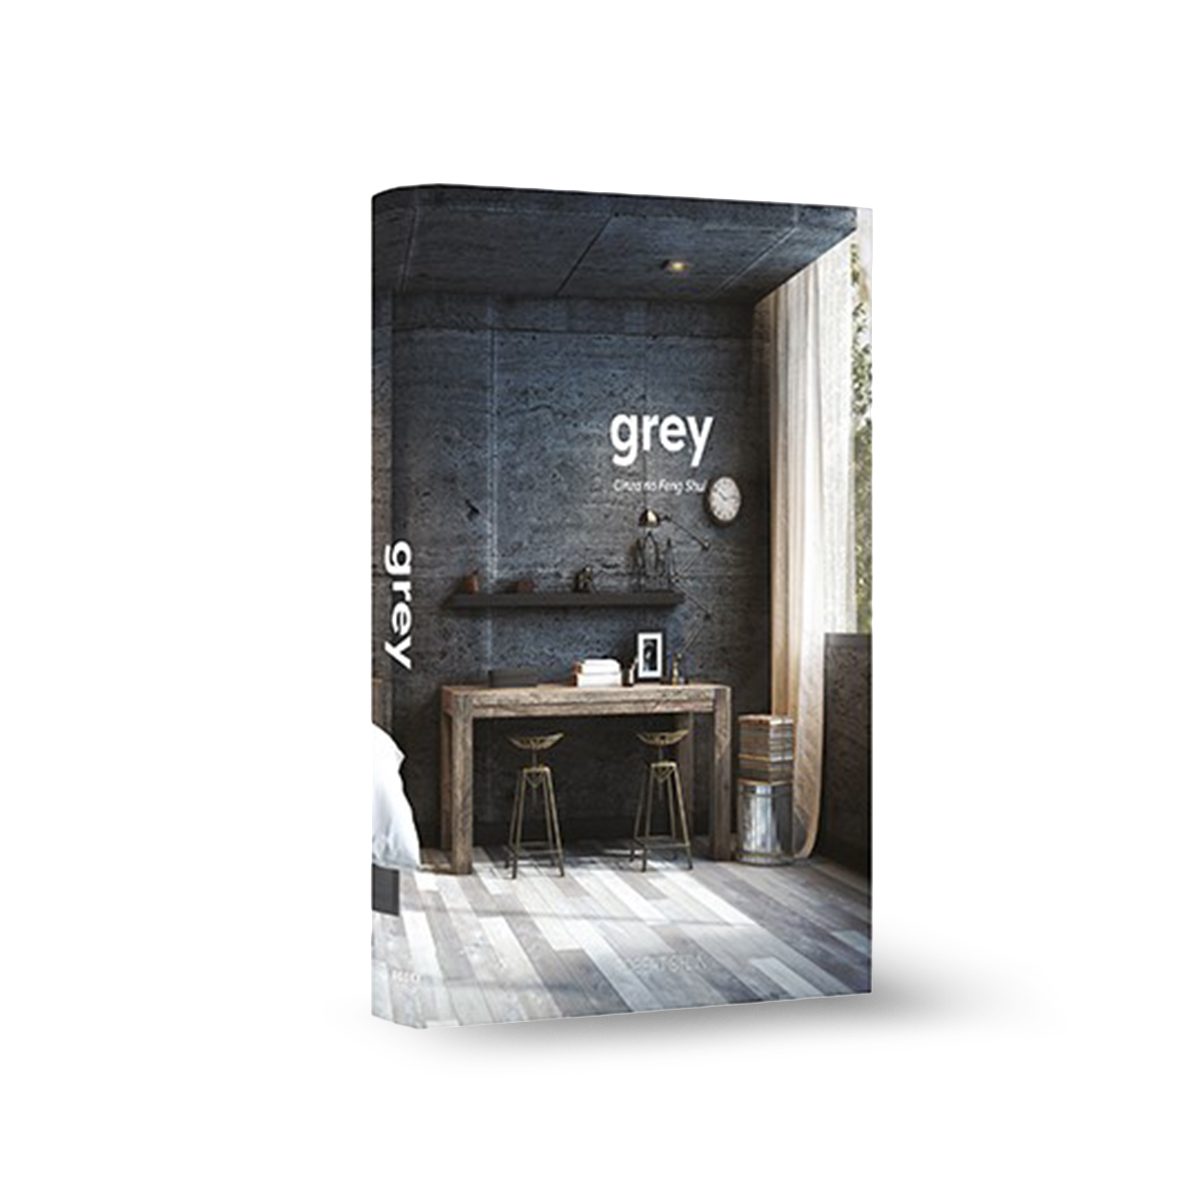 Caixa-livro-grey-9457